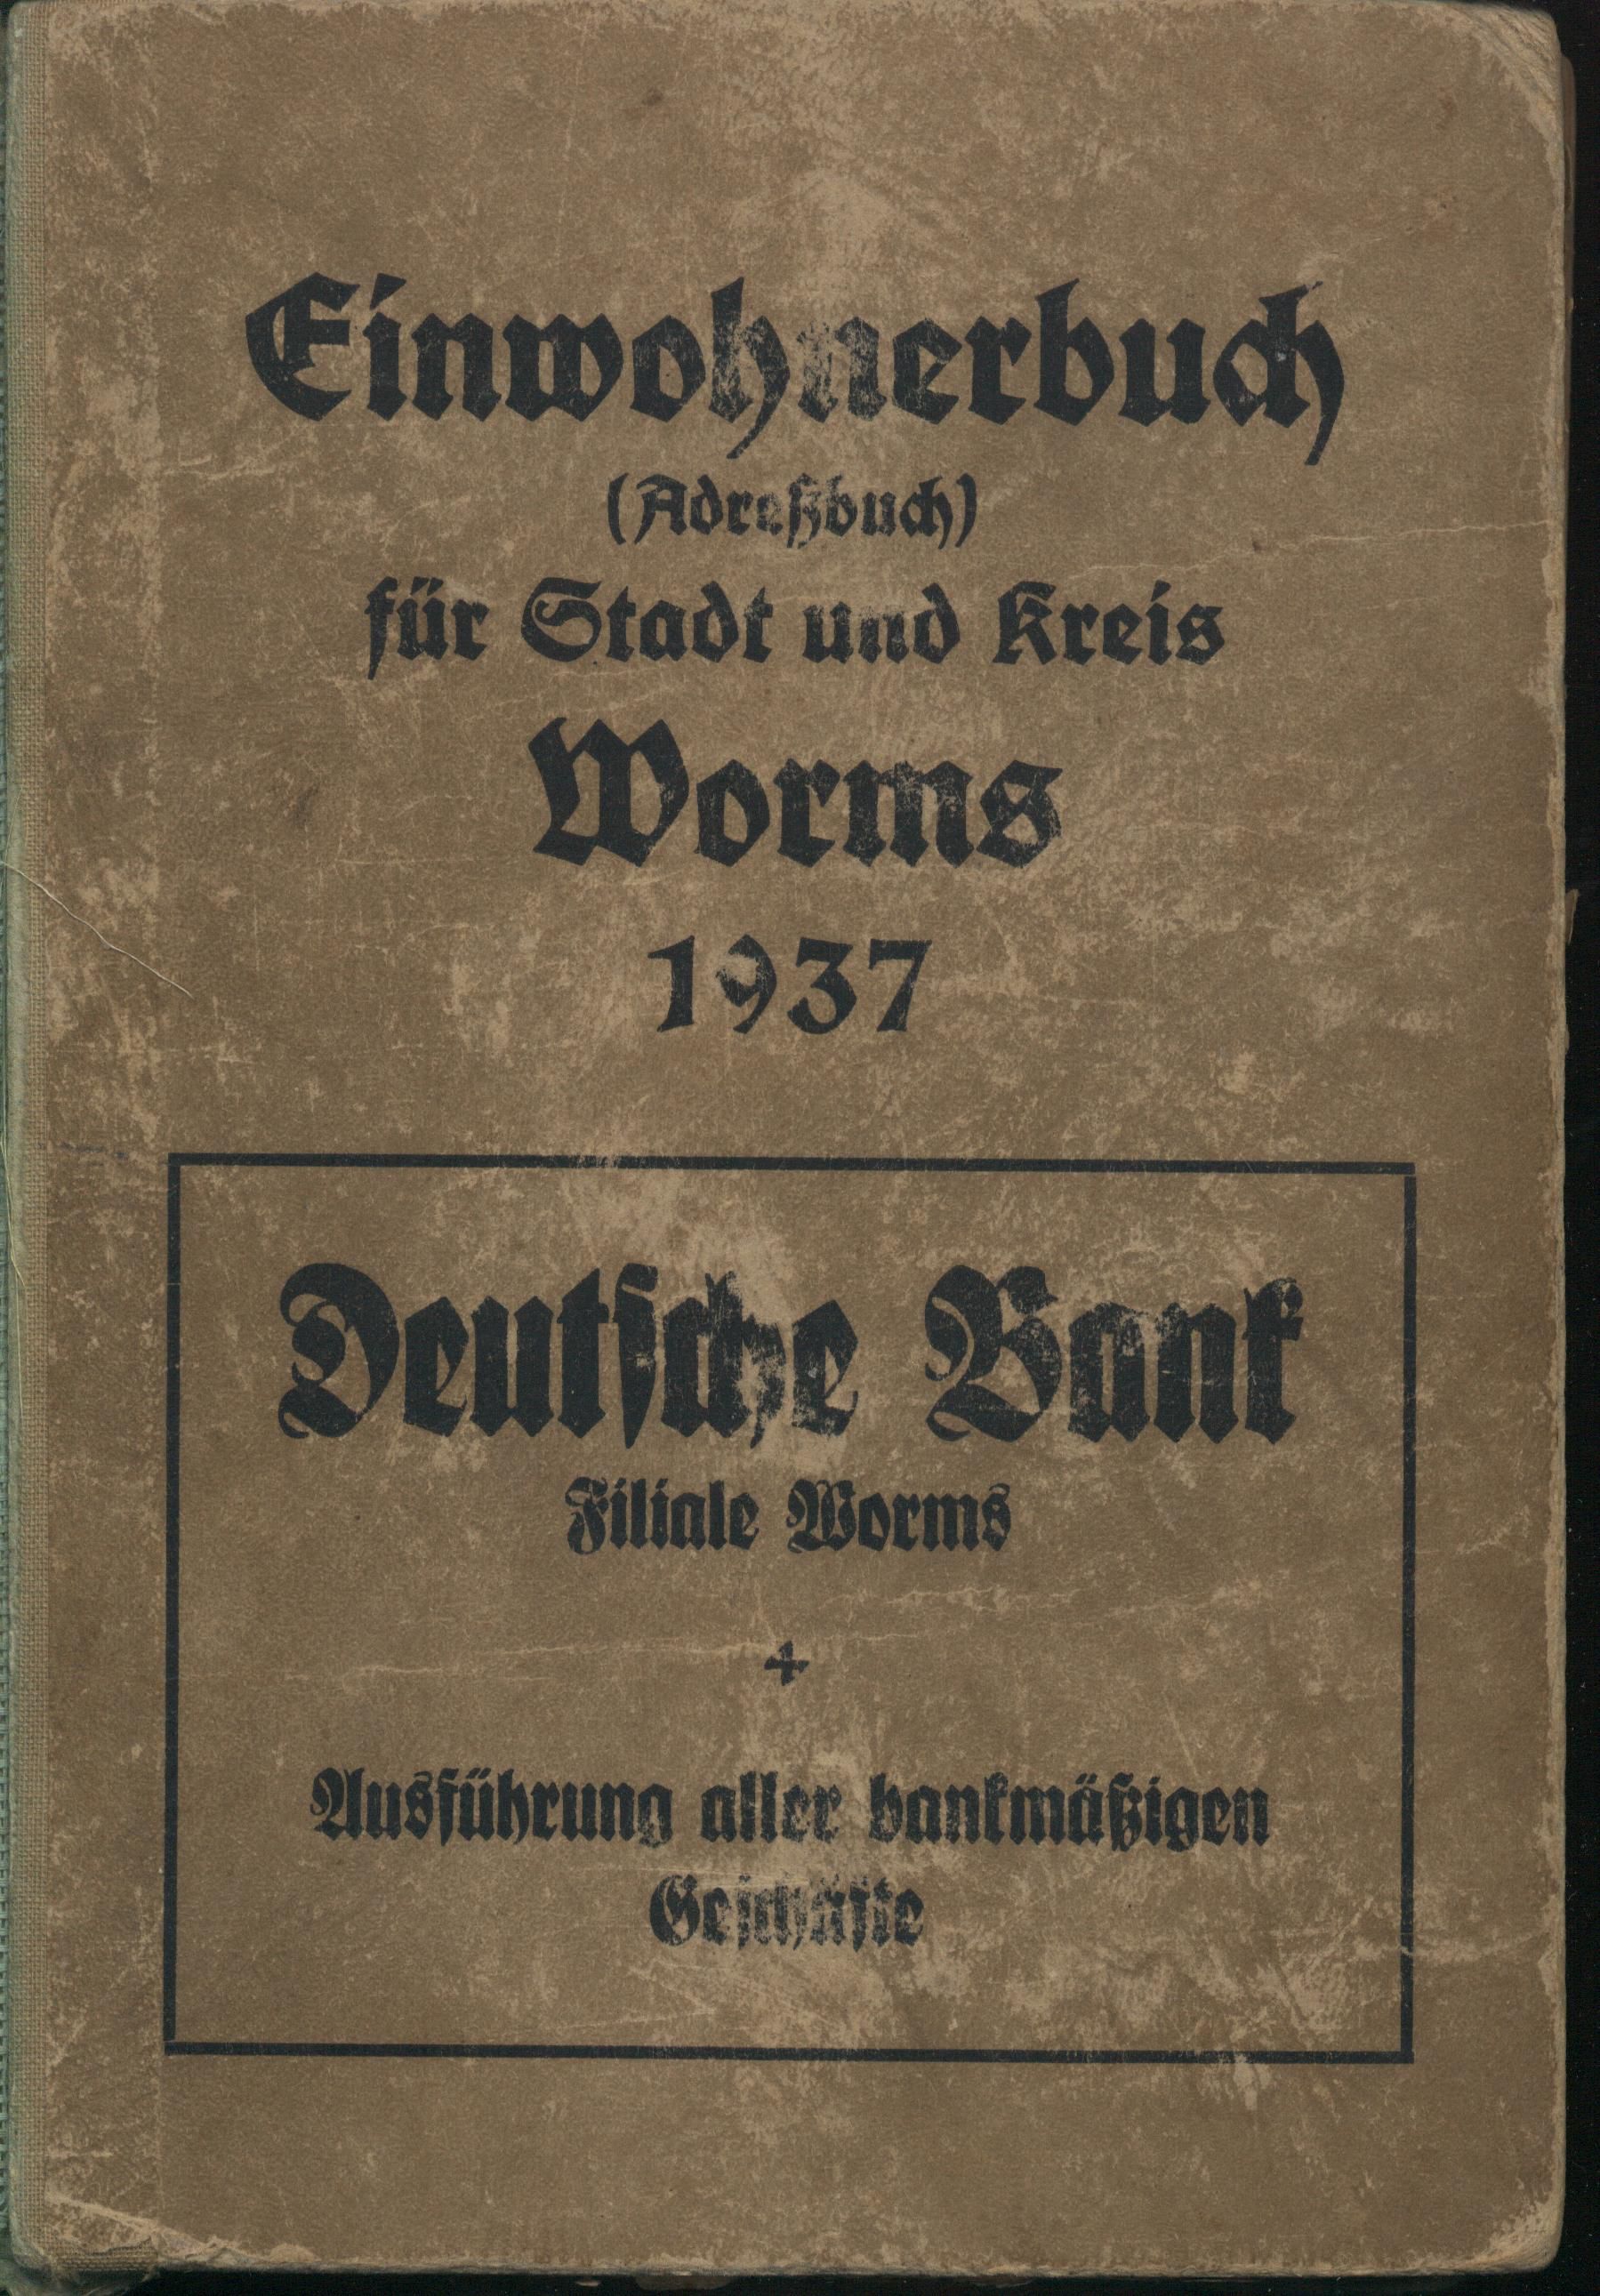 Einwohnerbuch (Adreßbuch) für die Stadt und Kreis Worms 1937